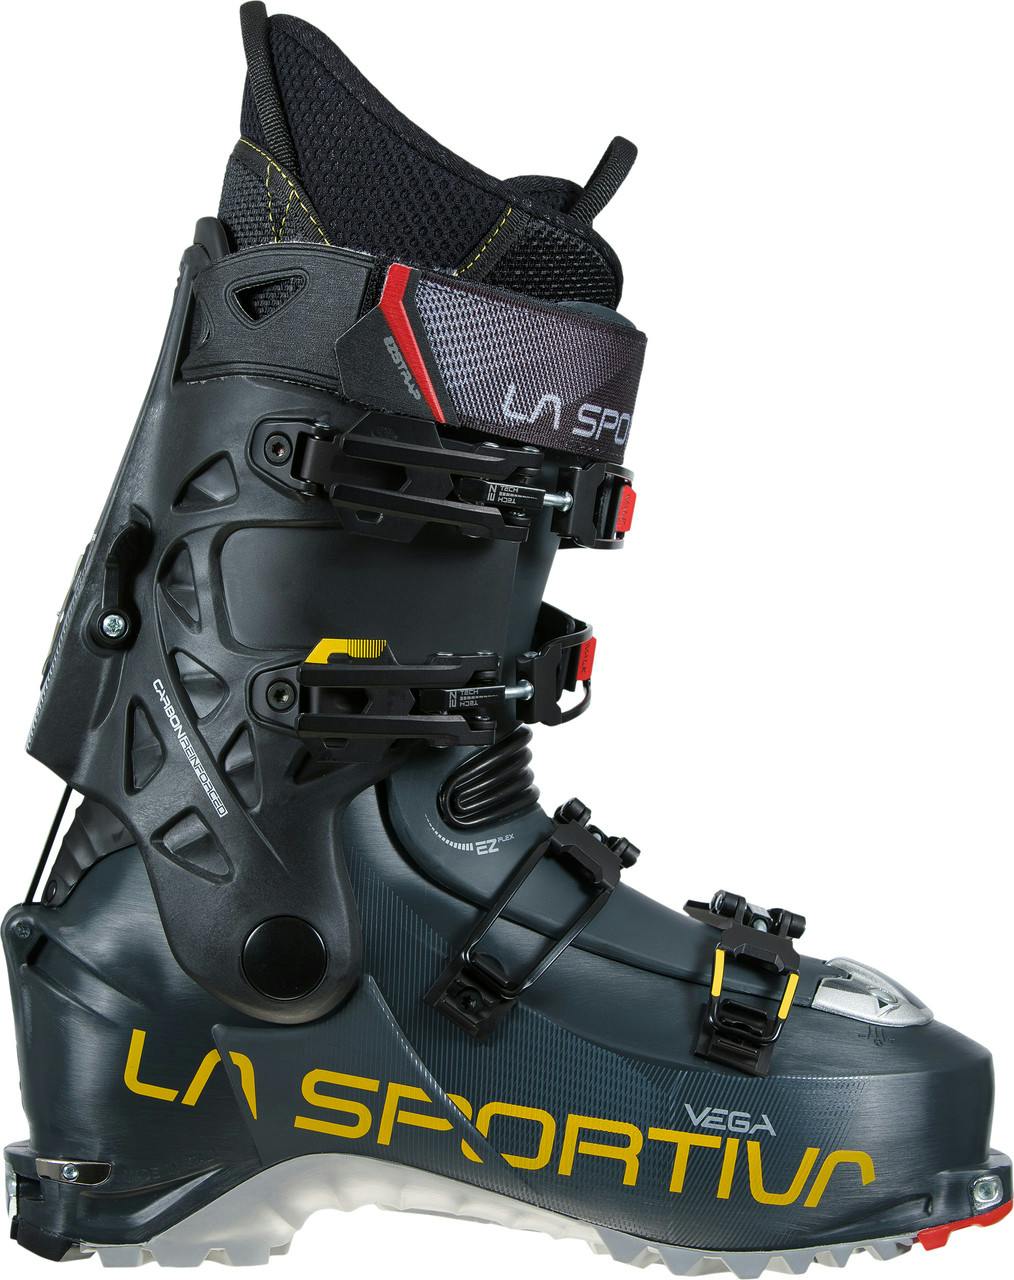 Bottes de ski Vega Carbone/Jaune